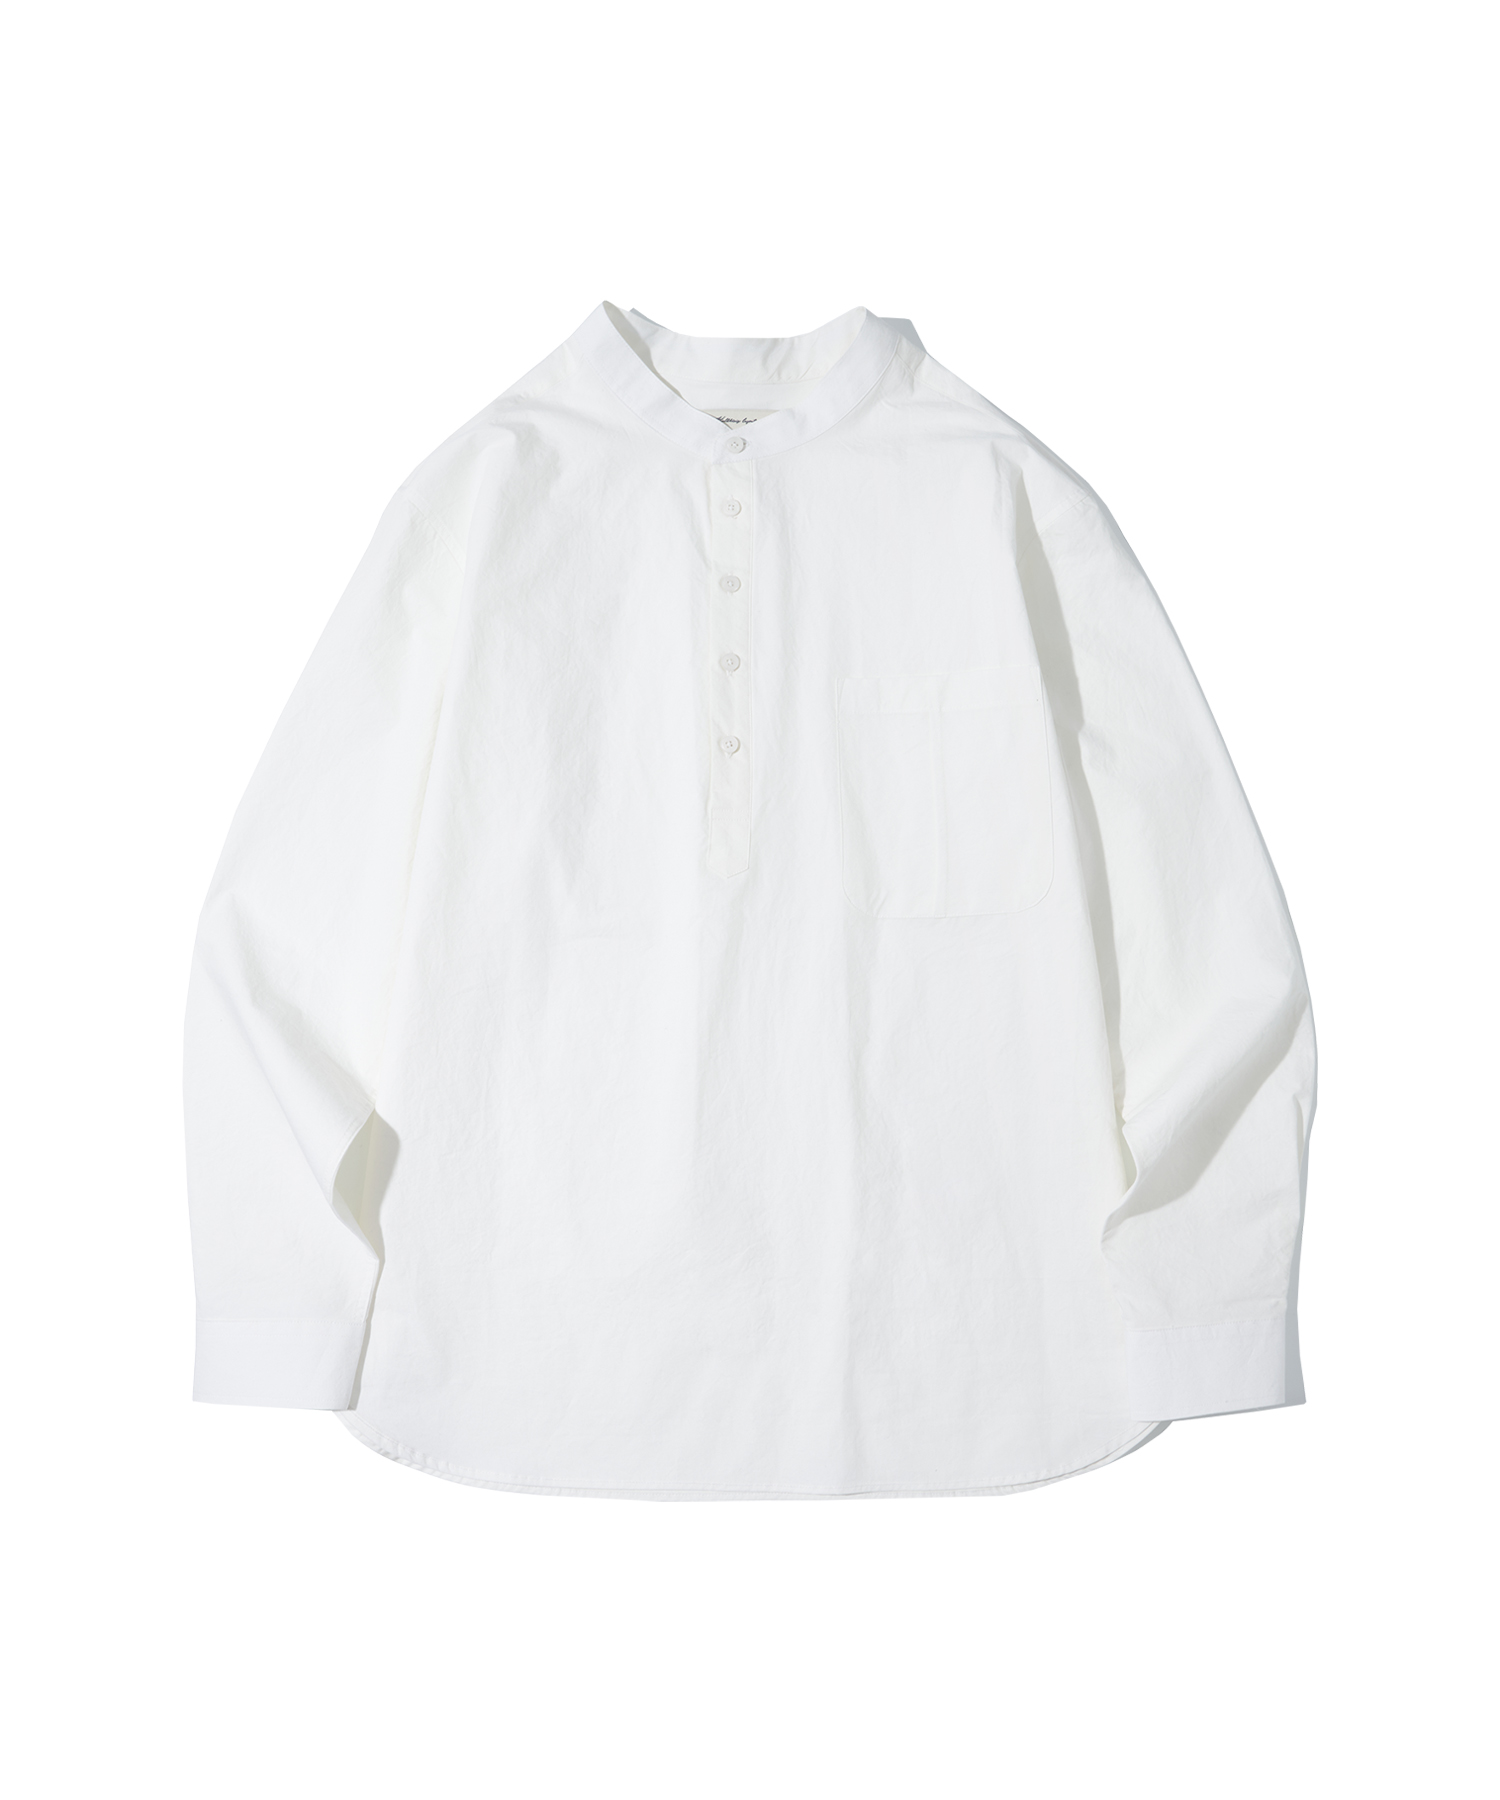 T20003 Henry neck shirt_Off white